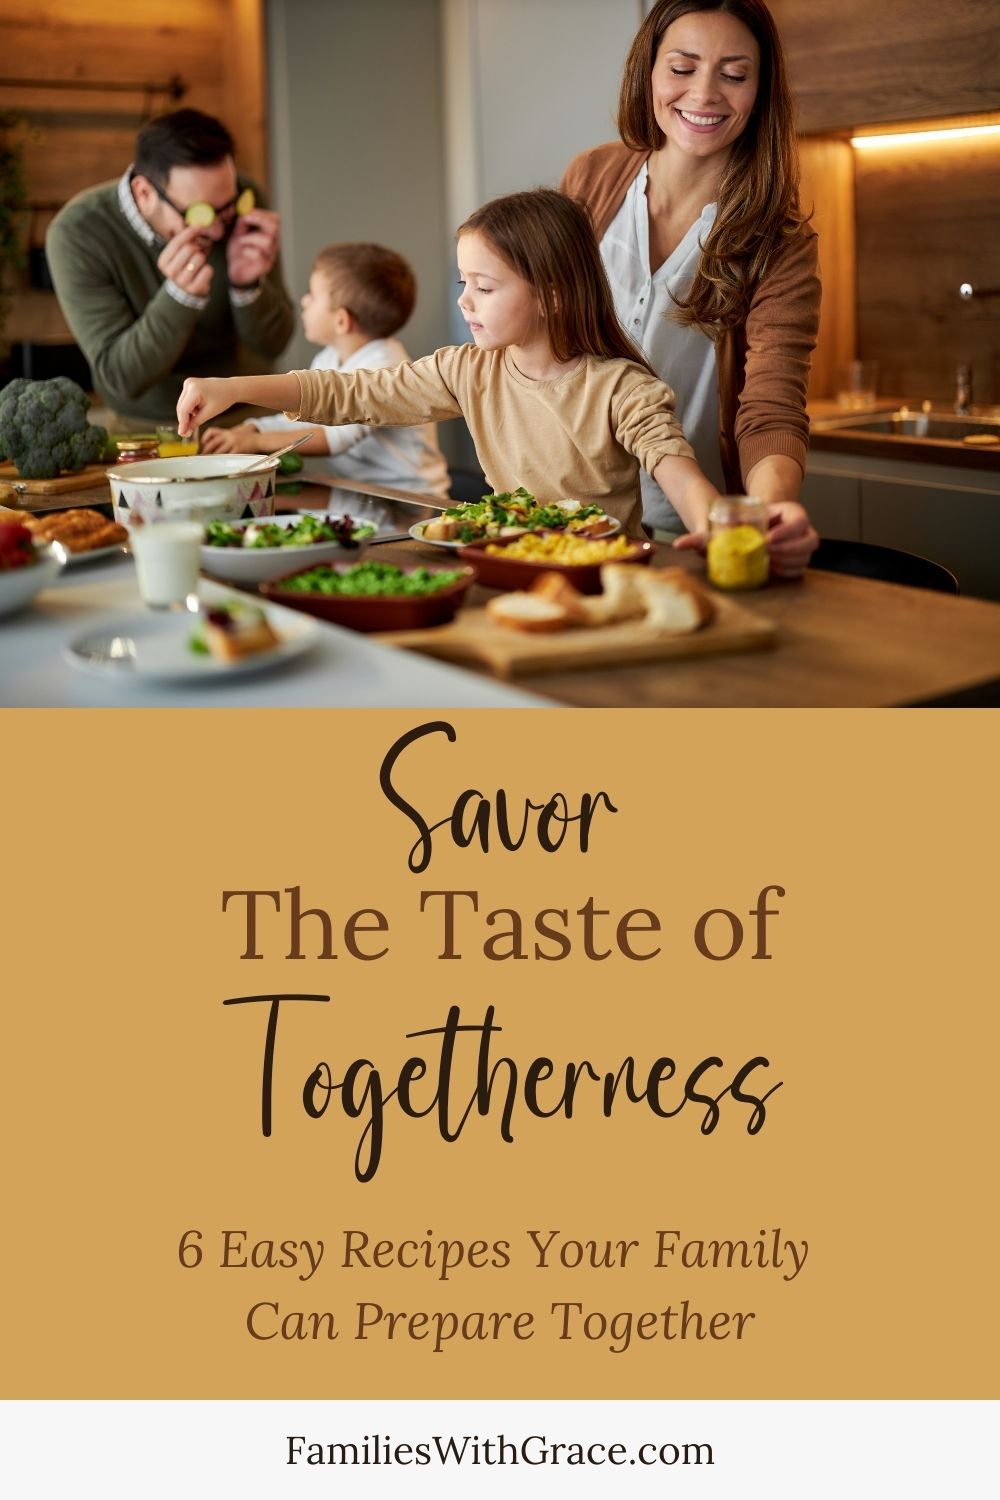 Savor the taste of togetherness